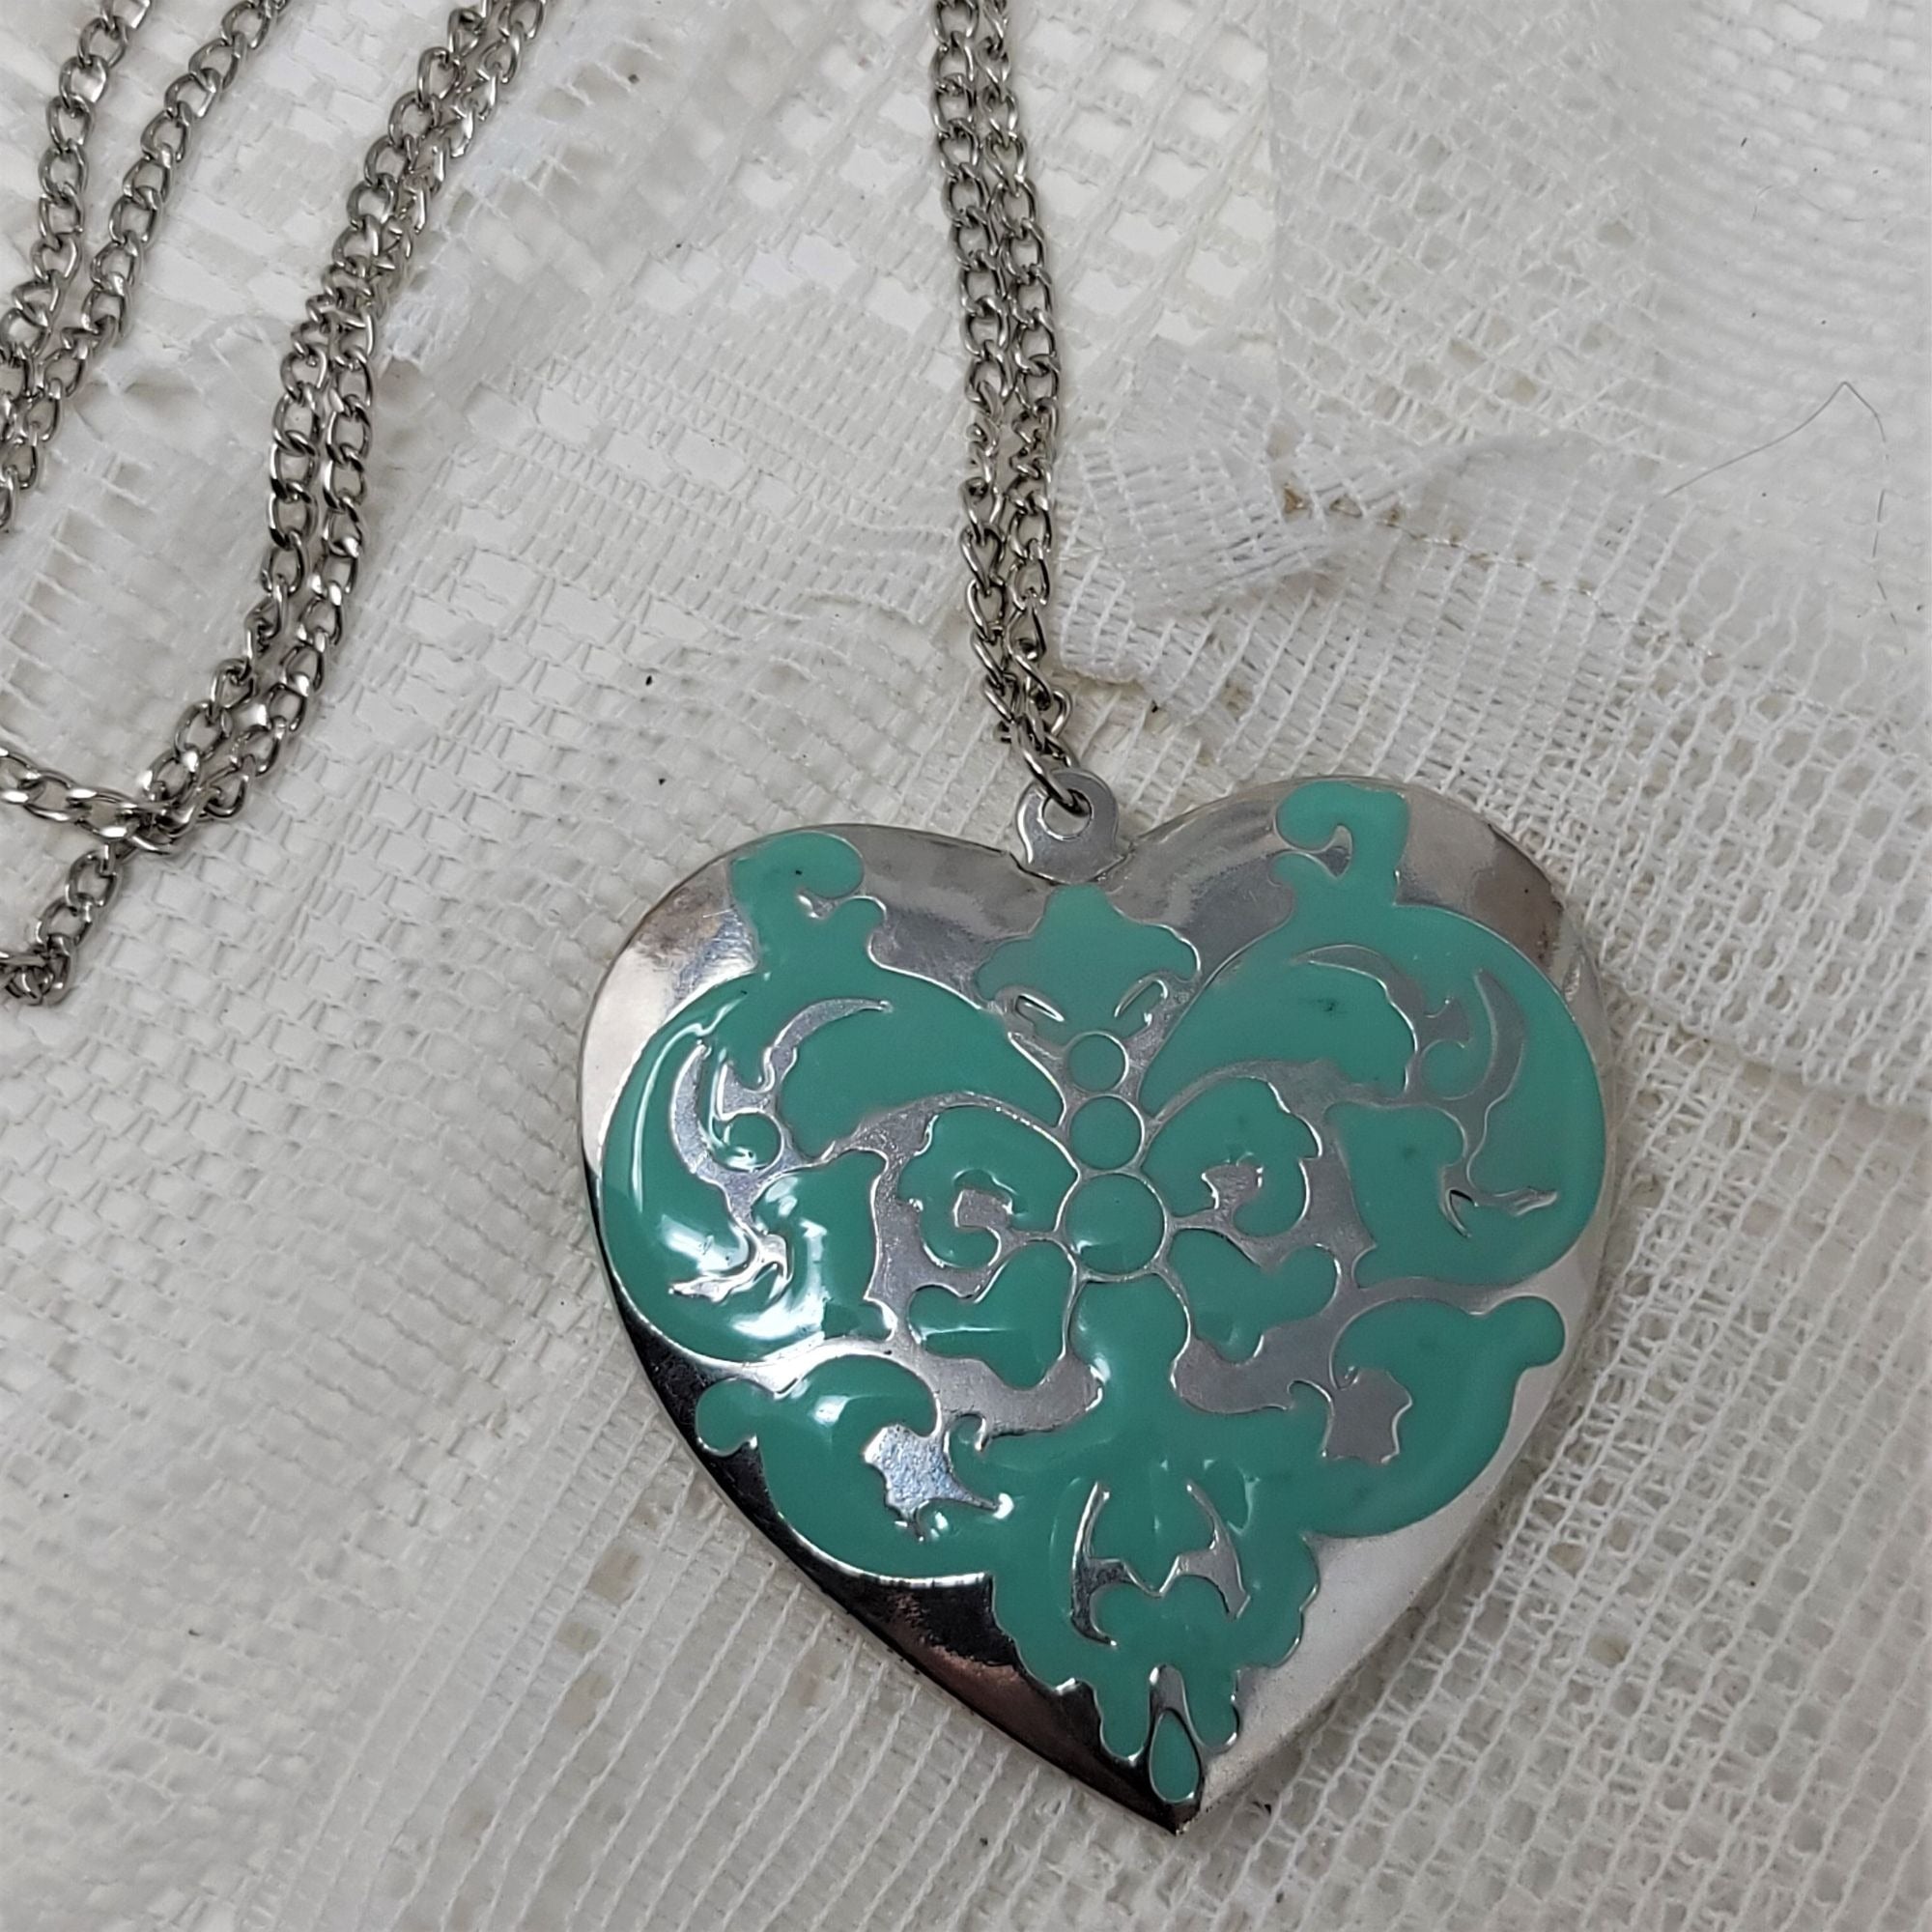 Jumbo Heart Shape Locket Necklace Turquoise Enamel